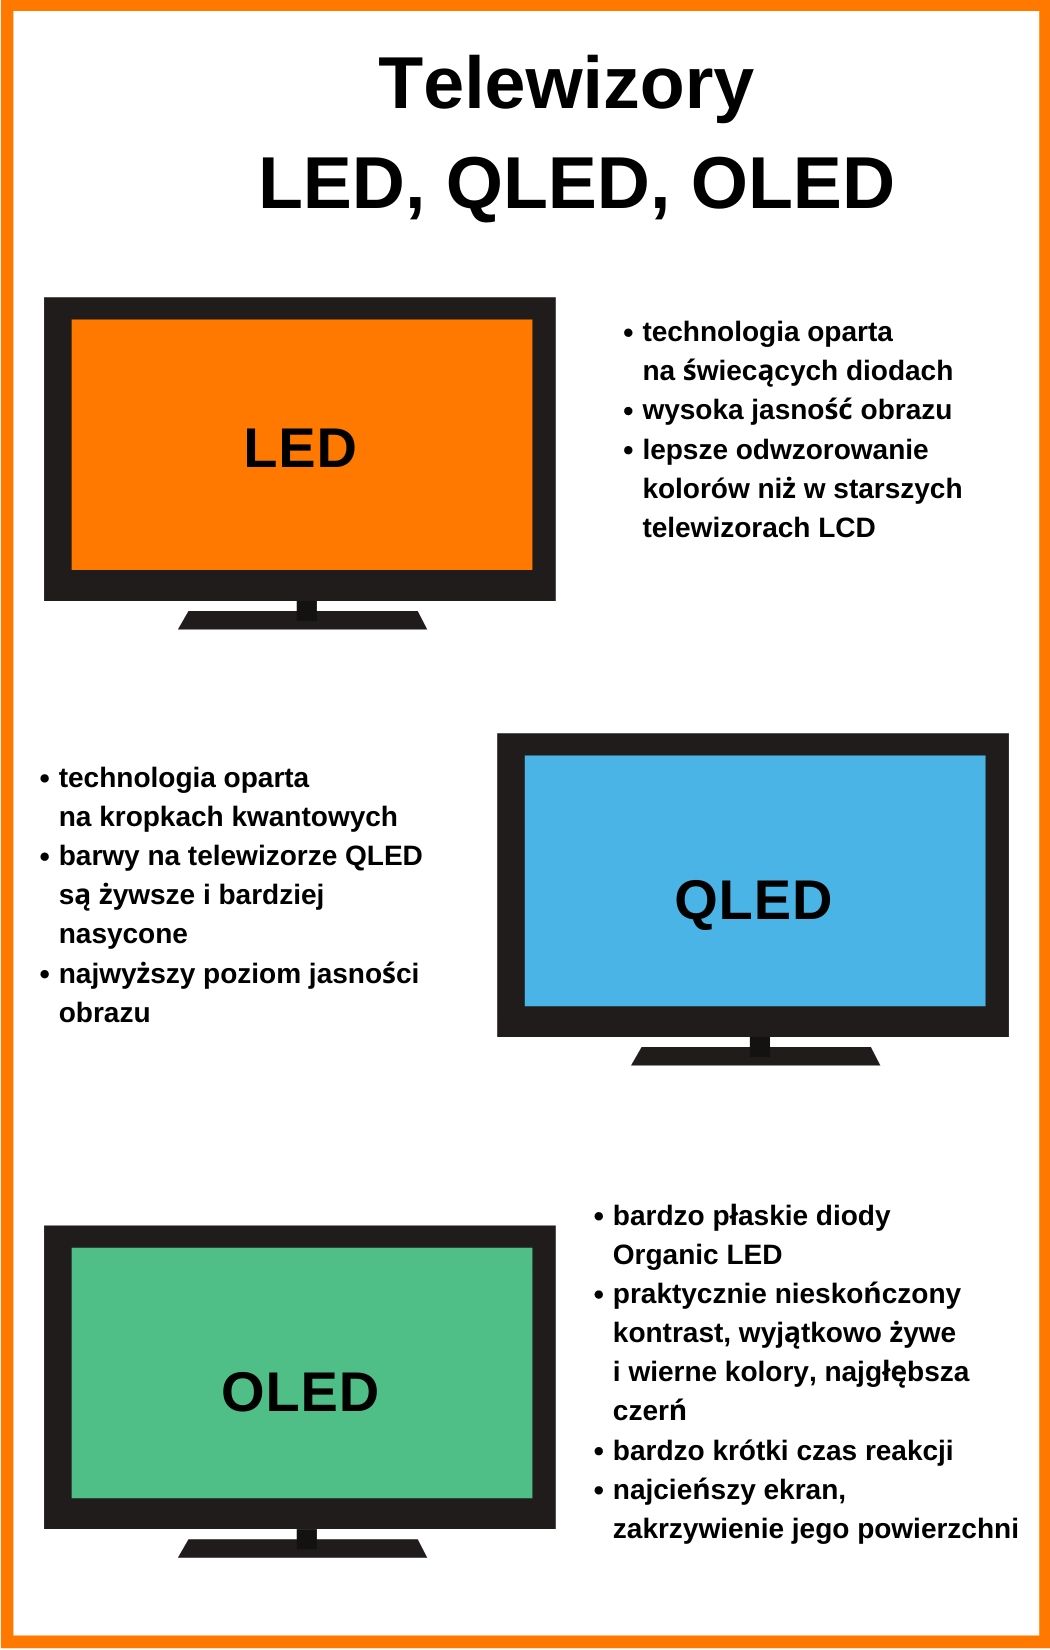 Jaka jest różnica między LED a QLED?